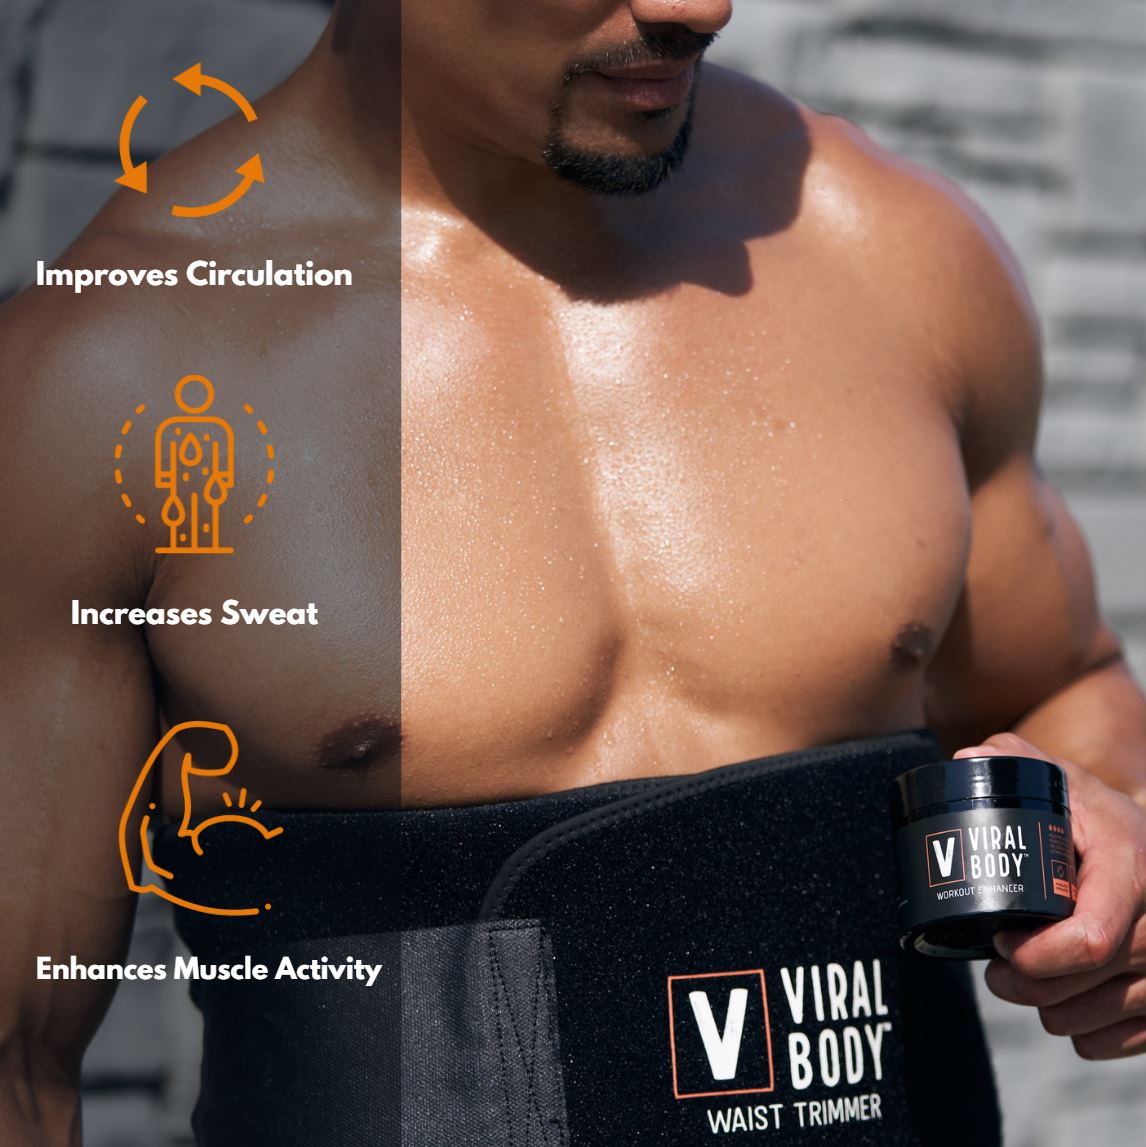 Viral Body® Workout Enhancer (5 Ounce jar)